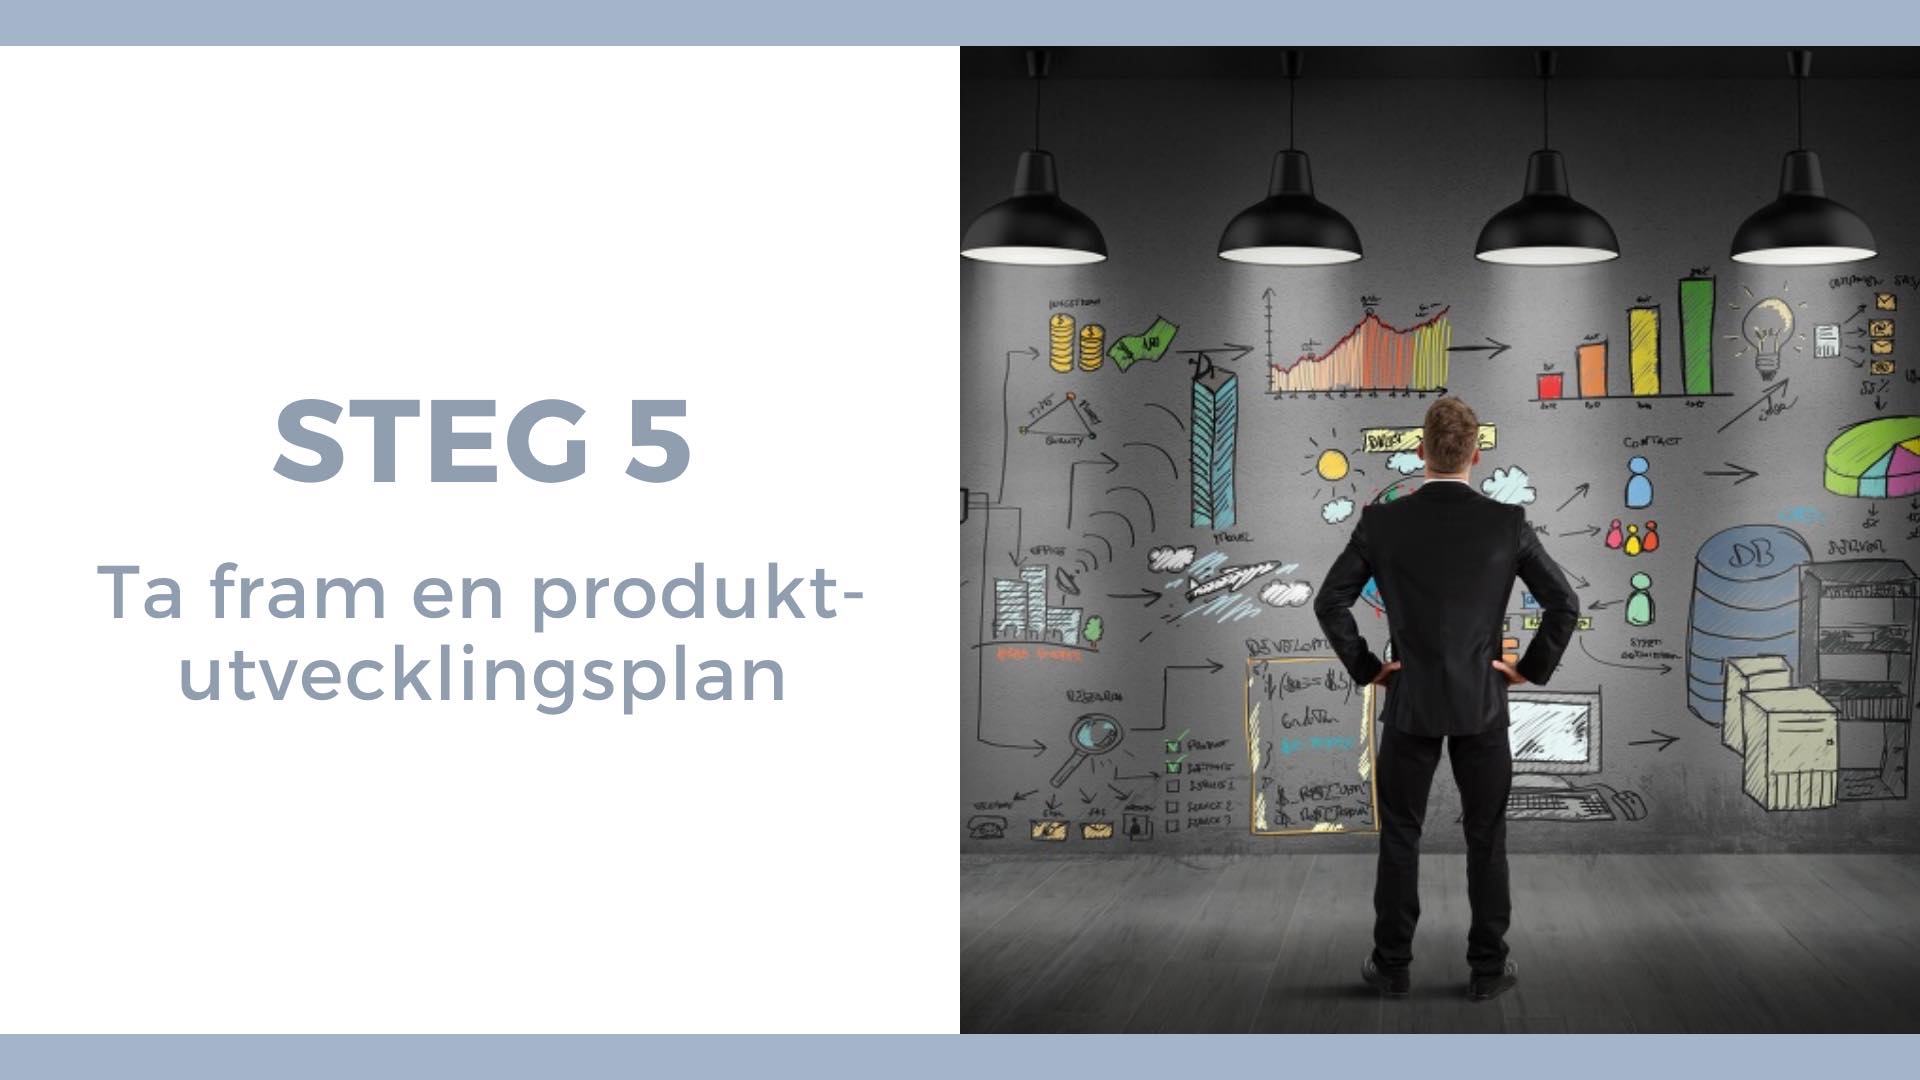 Steg 5 - ta fram en produktutvecklingsplan - Man står framför en tavla med en uppritad processkarta